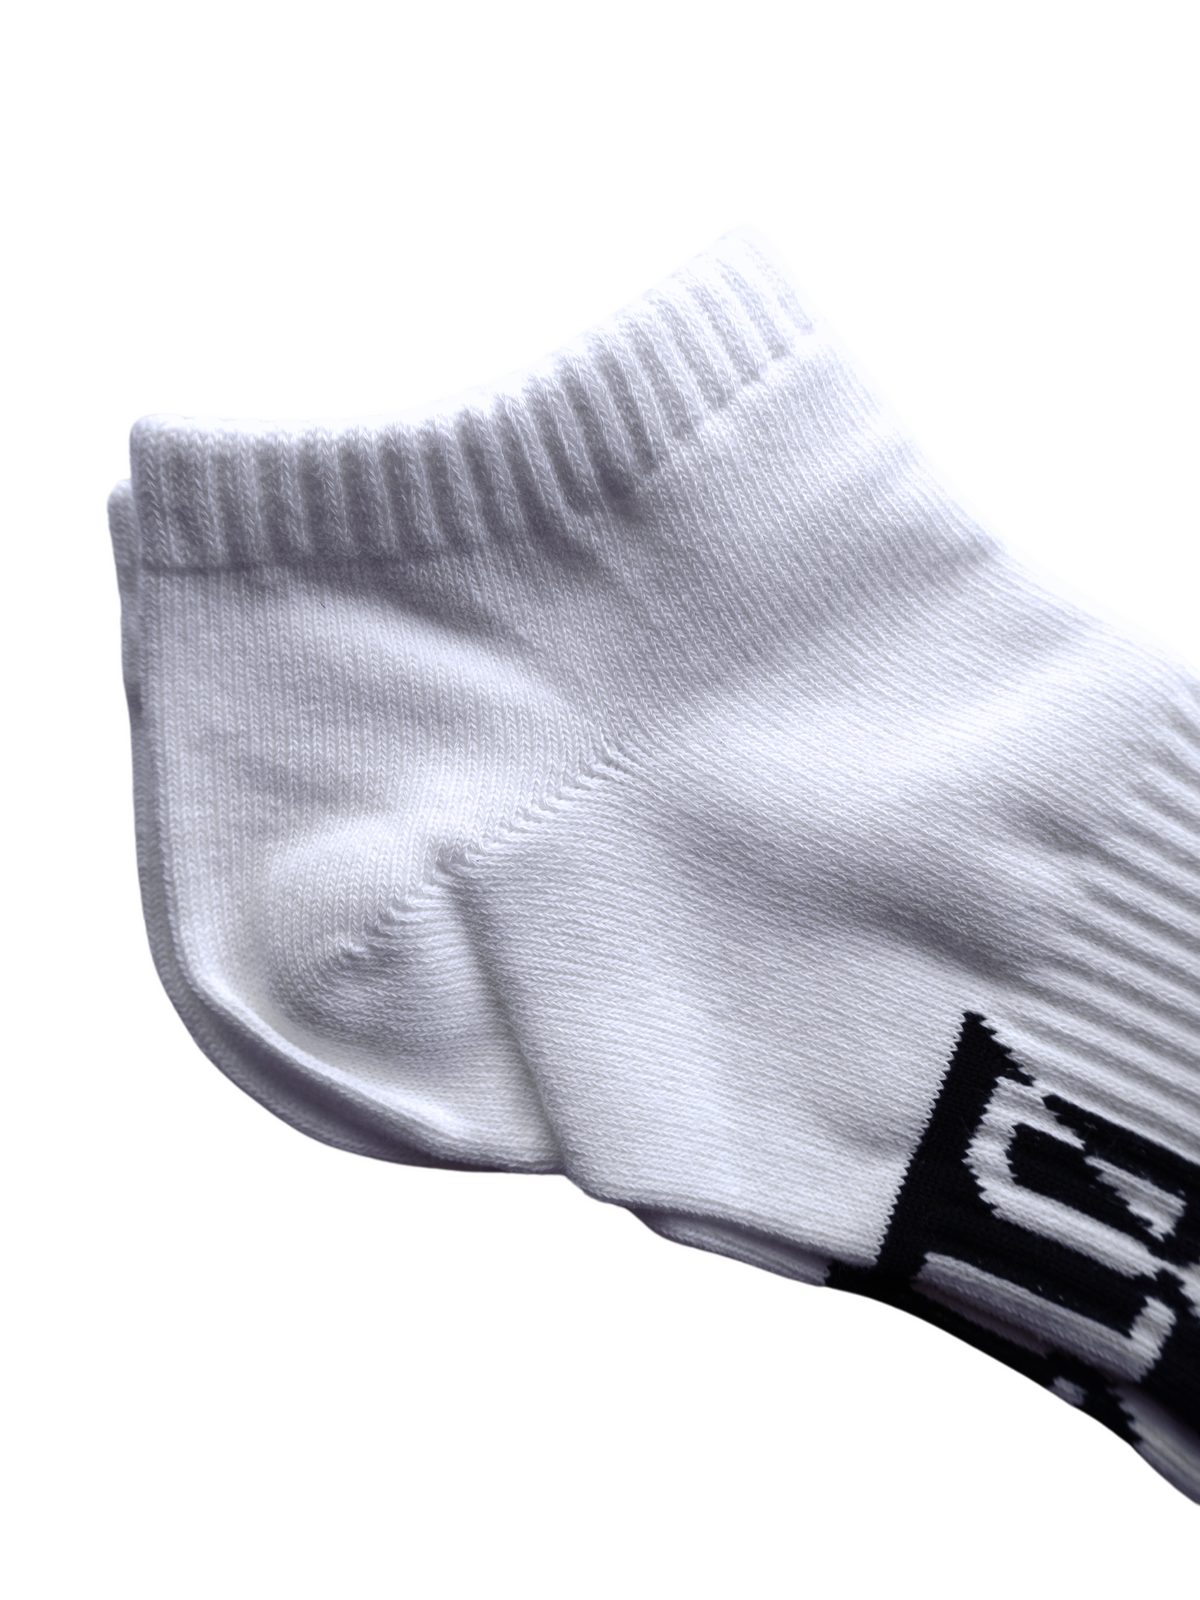 DTL White Socks - 3 Pack